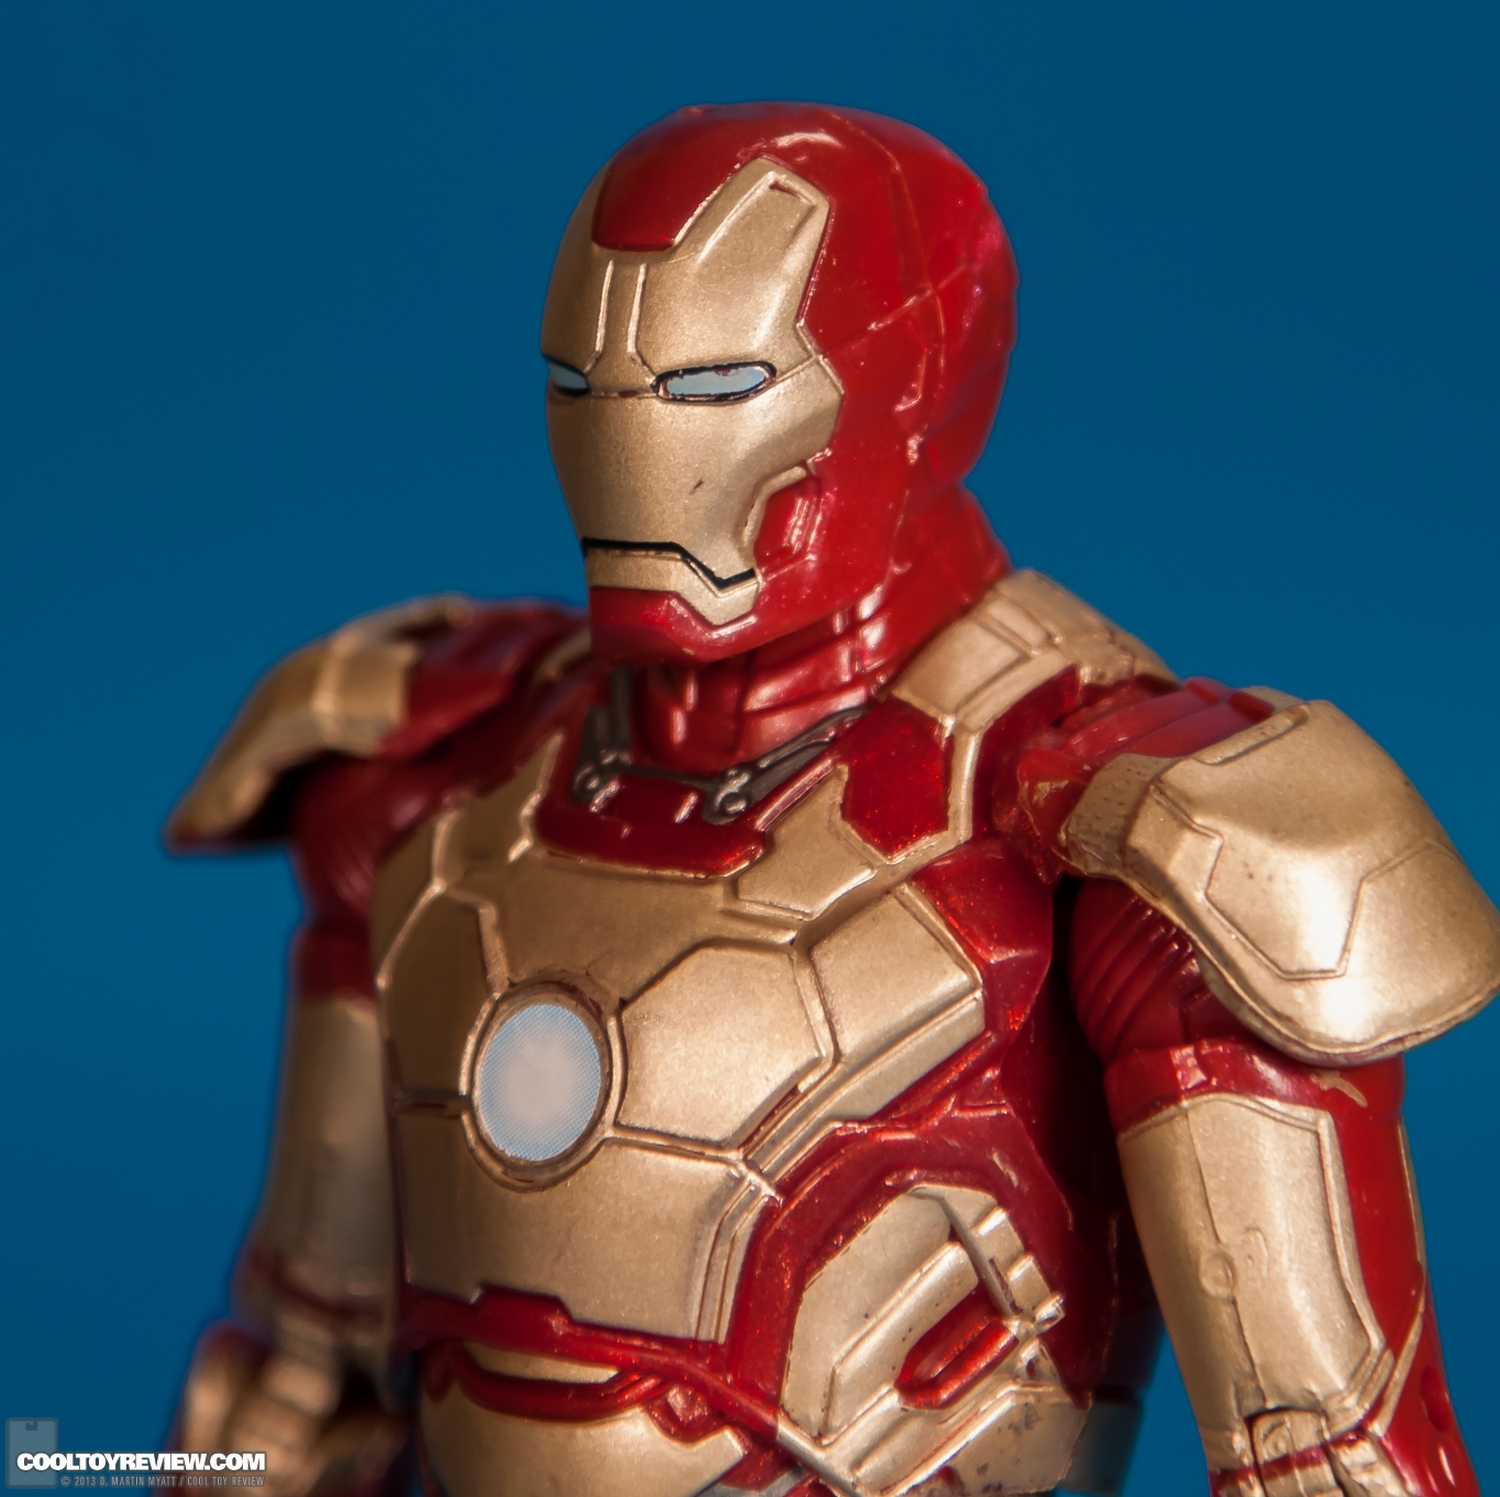 Iron-Man-Mark-42-Marvel-Legends-Iron-Monger-Series-007.jpg